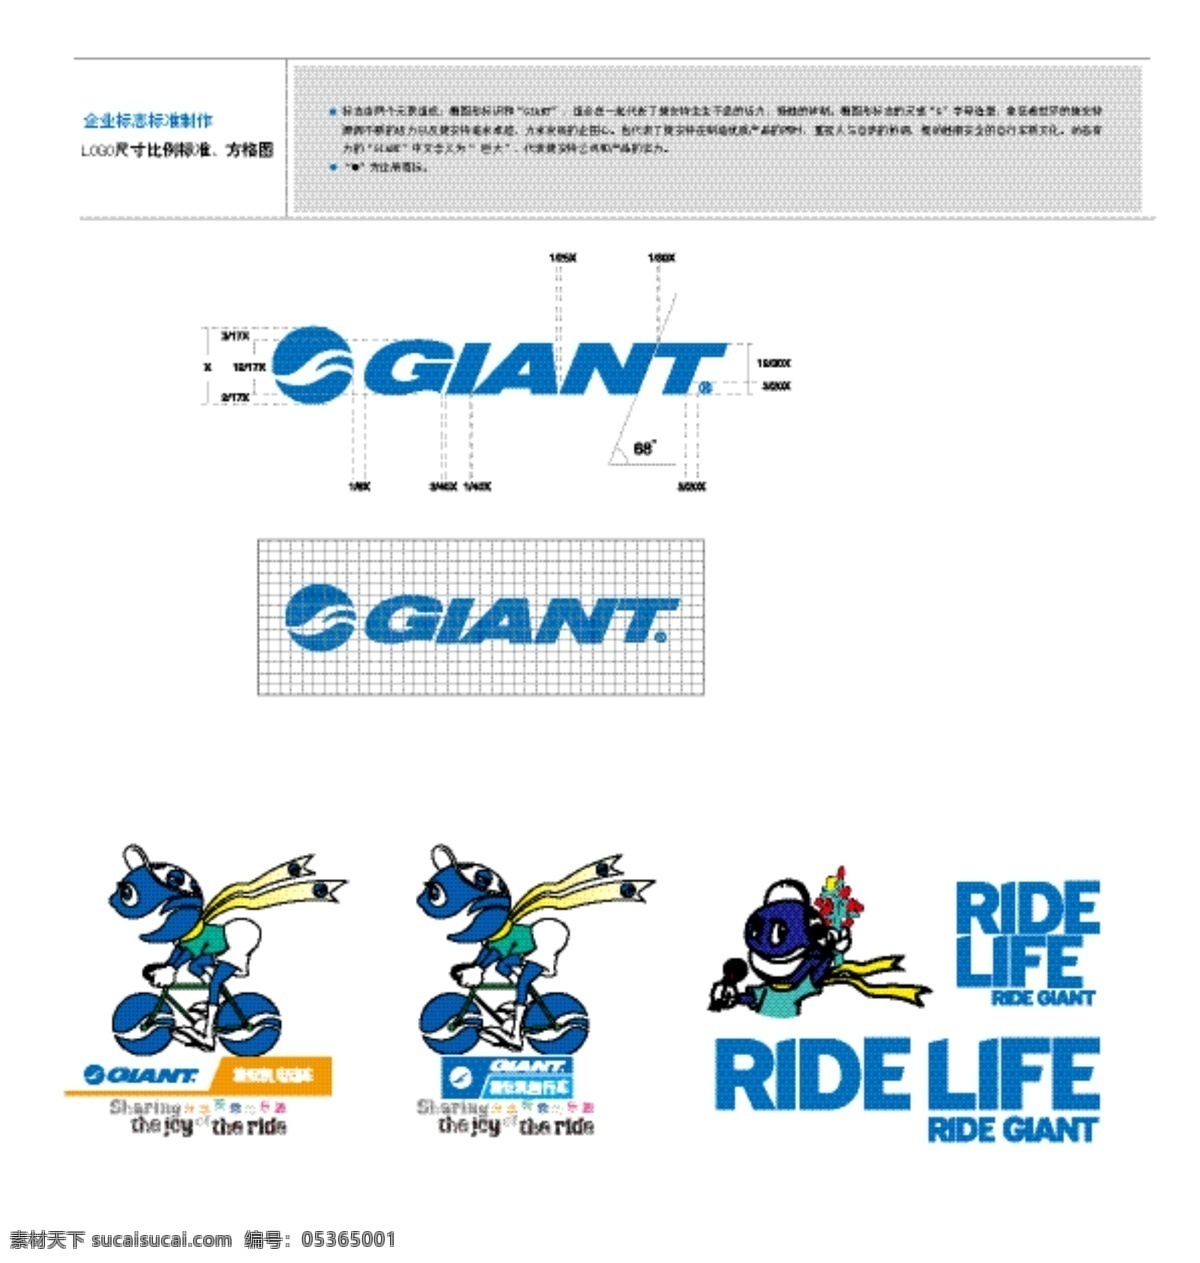 捷安特 标志 logo ride life 广告语 标准字 自行车 电动车 吉祥物 标准制图 企业 标识标志图标 矢量